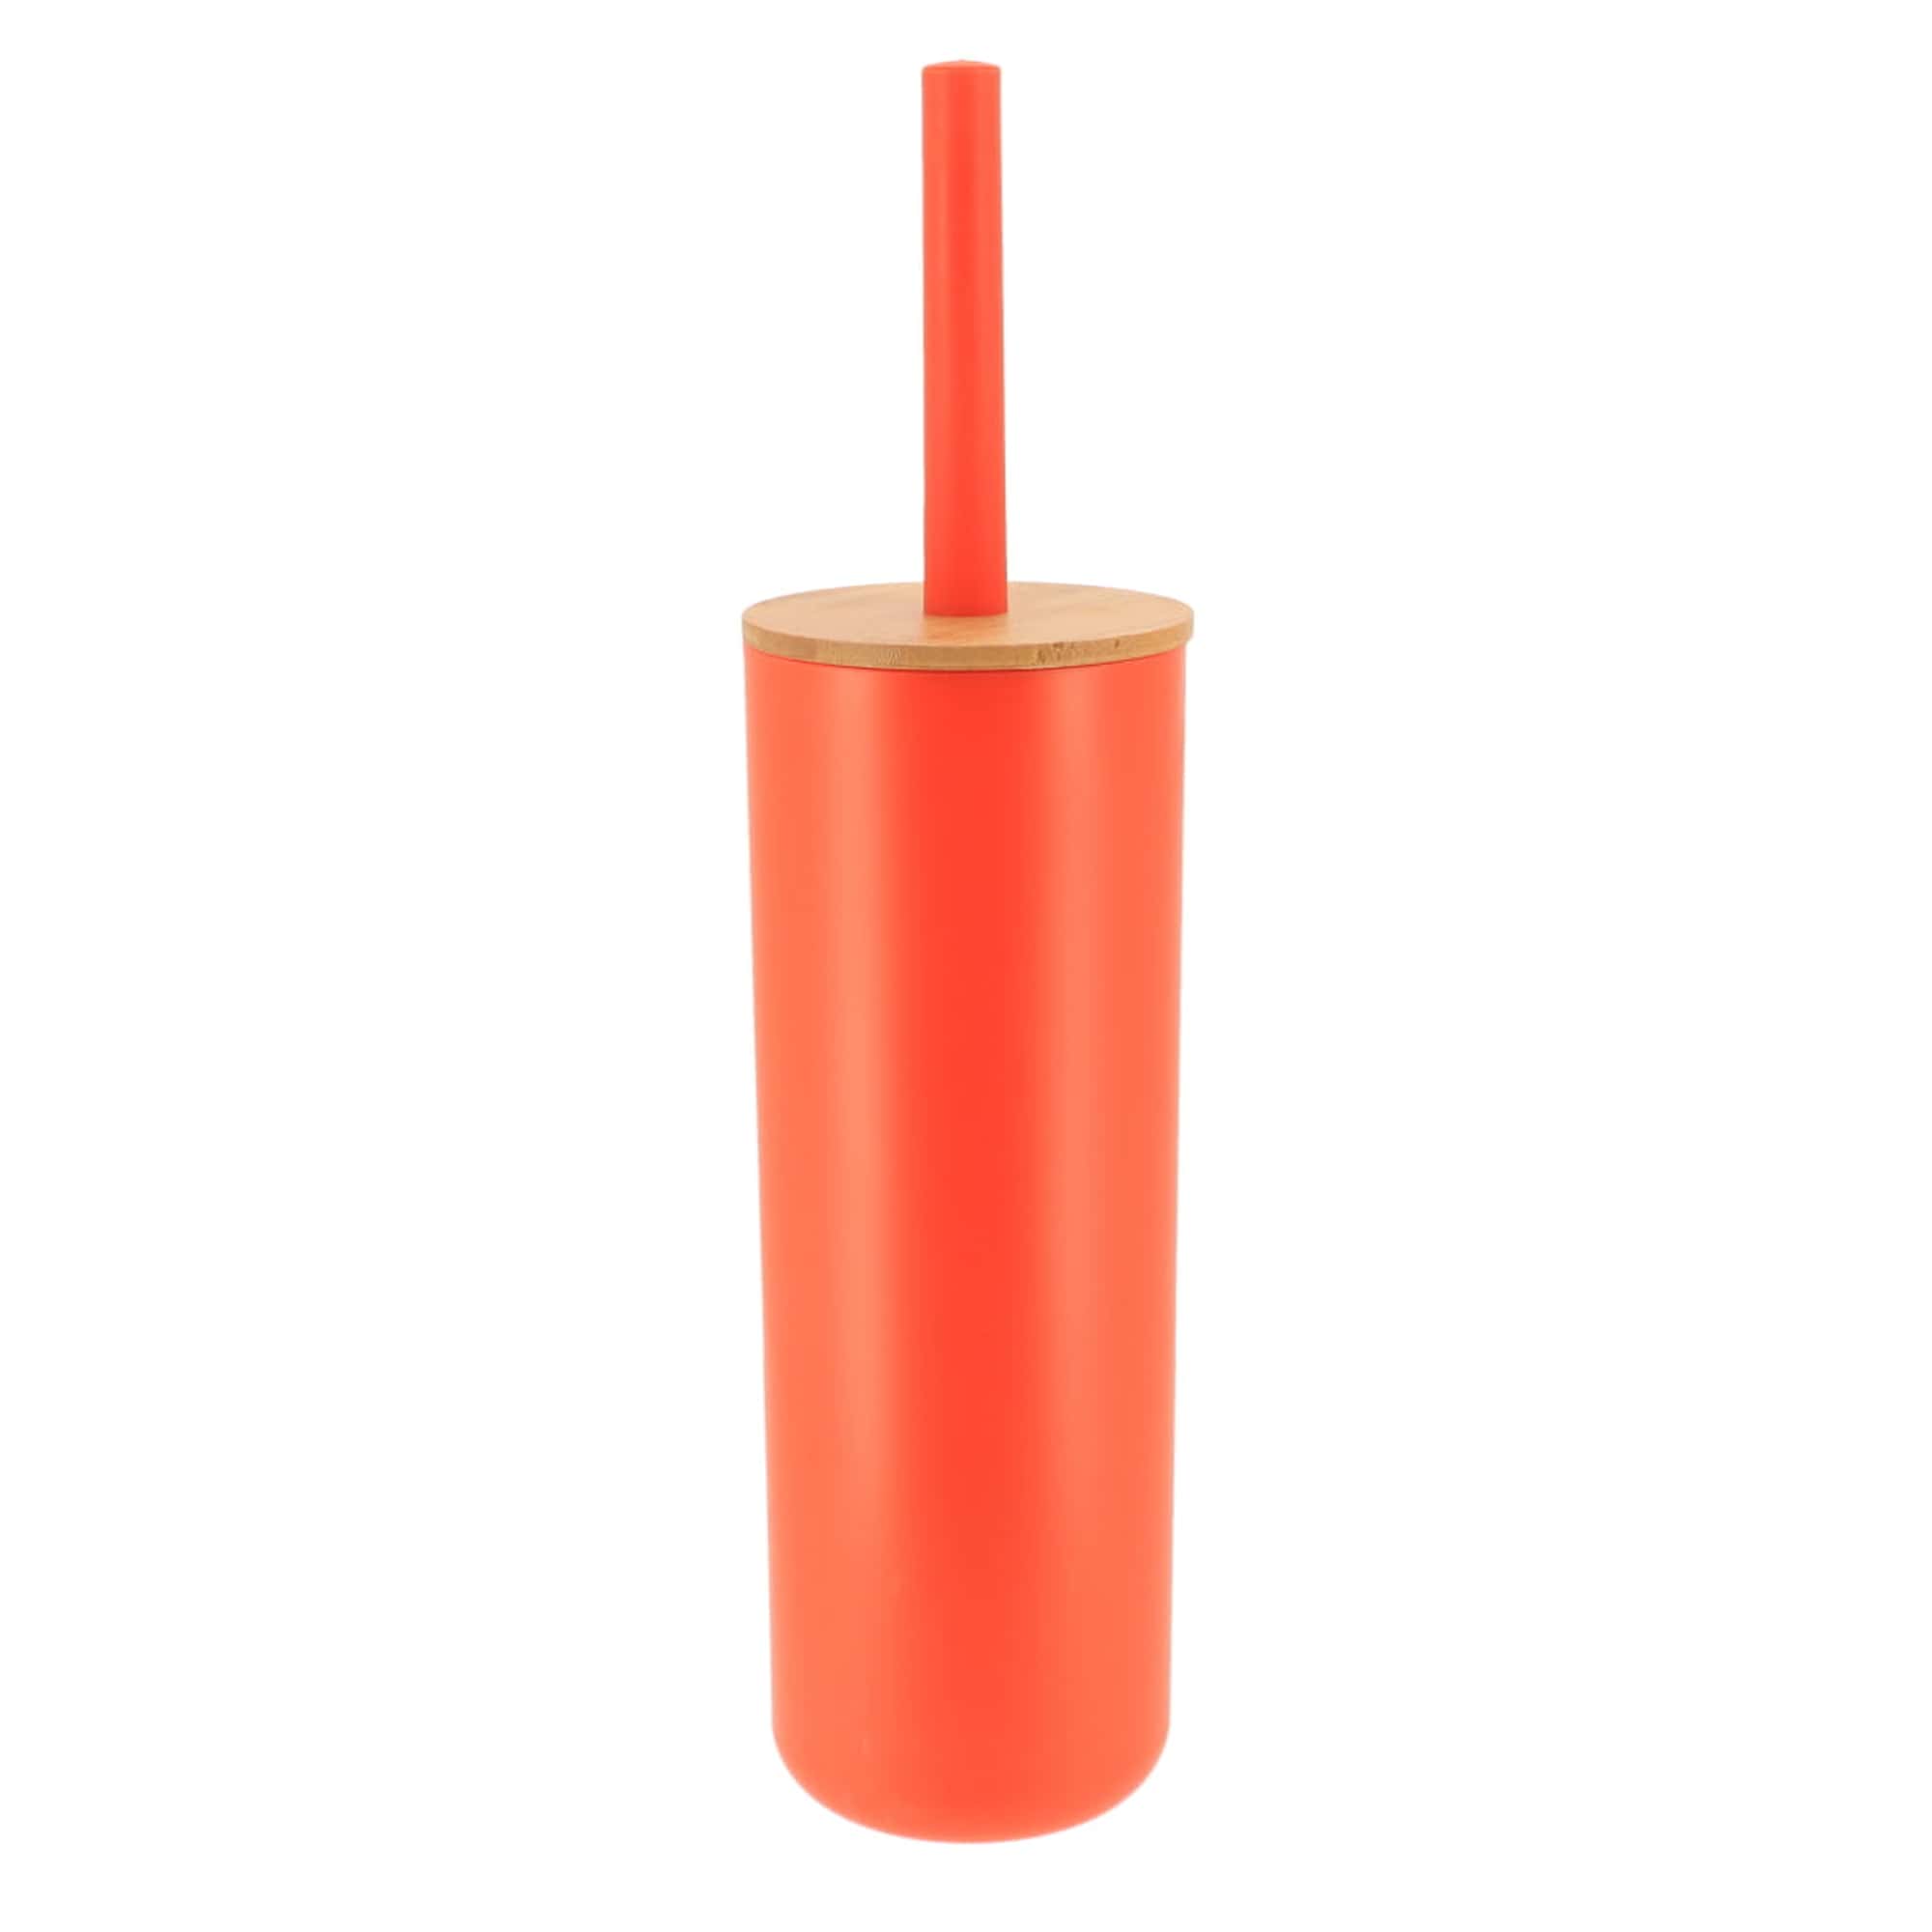 orange and bamboo toilet brush and holder set